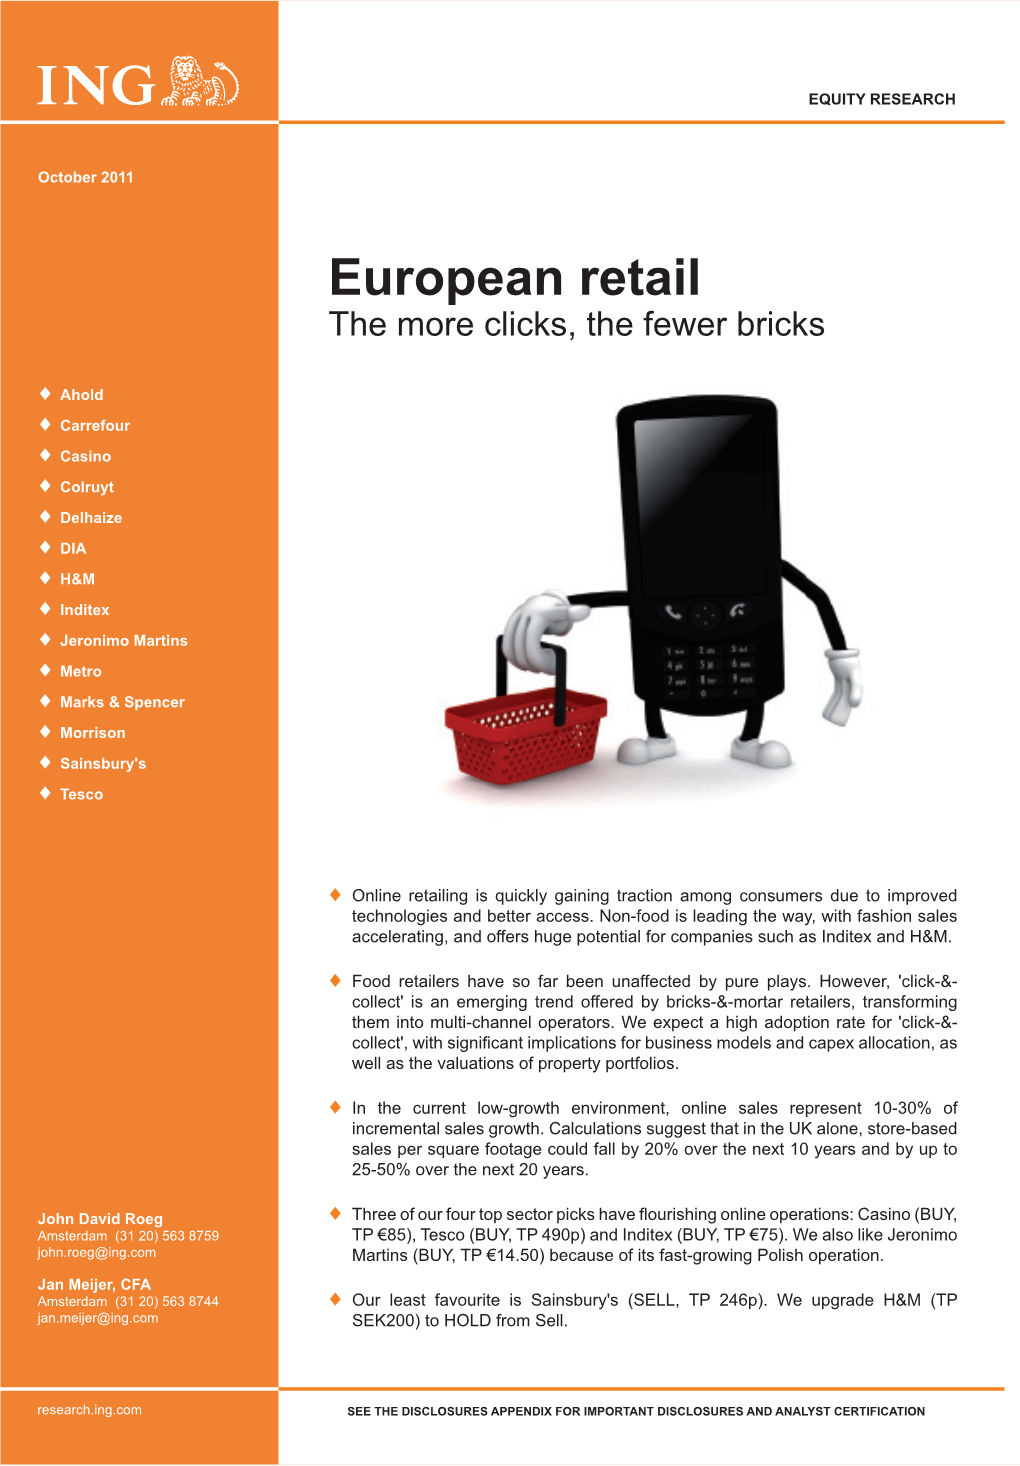 European Retail